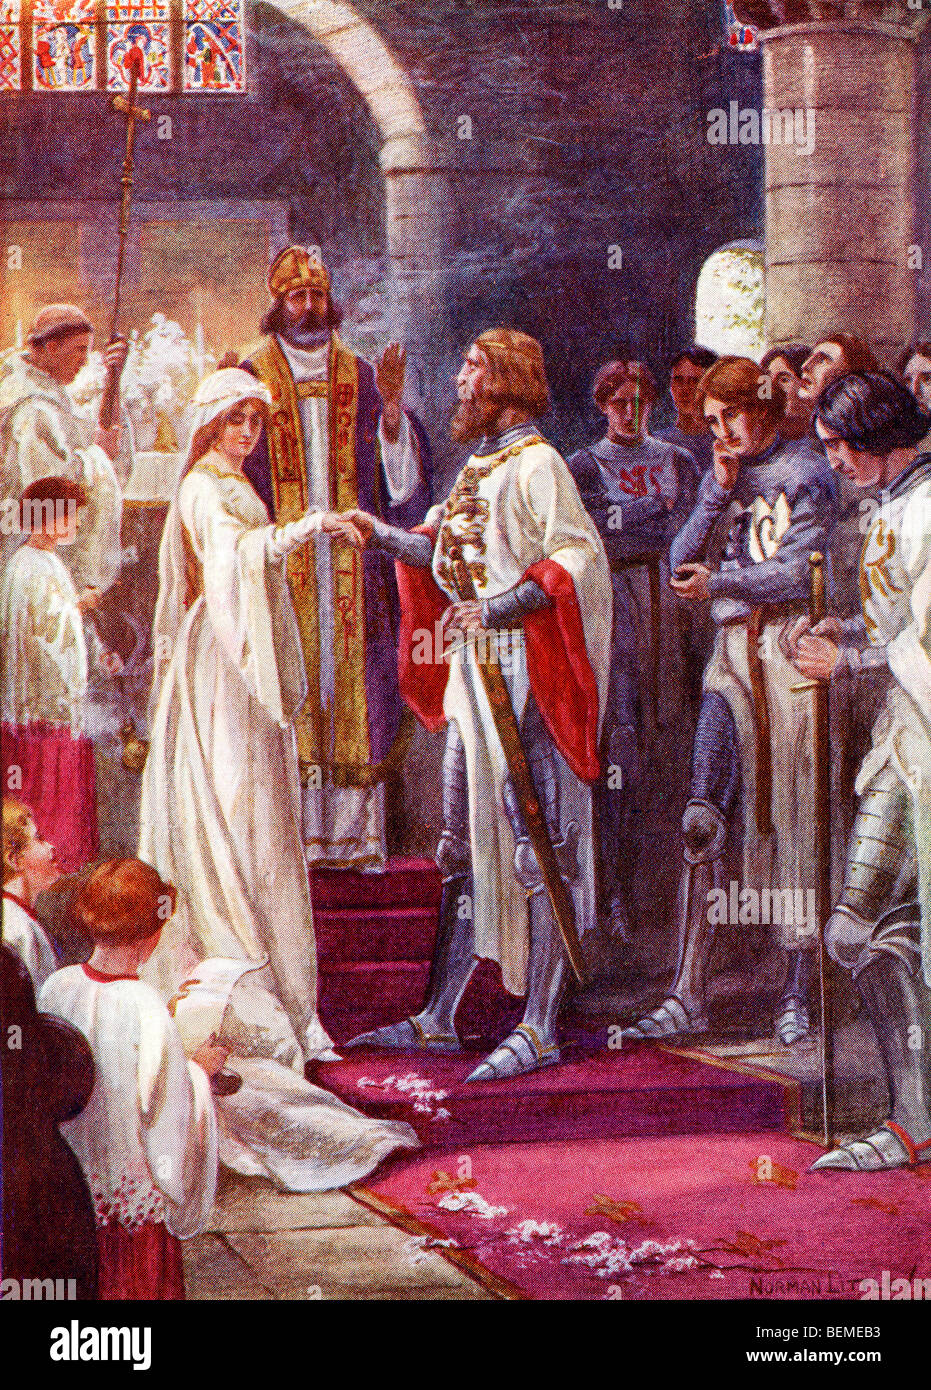 Le mariage du Roi Arthur et de Guenièvre. Illustration de l'album couleur La Passerelle à Tennyson publié 1910. Banque D'Images